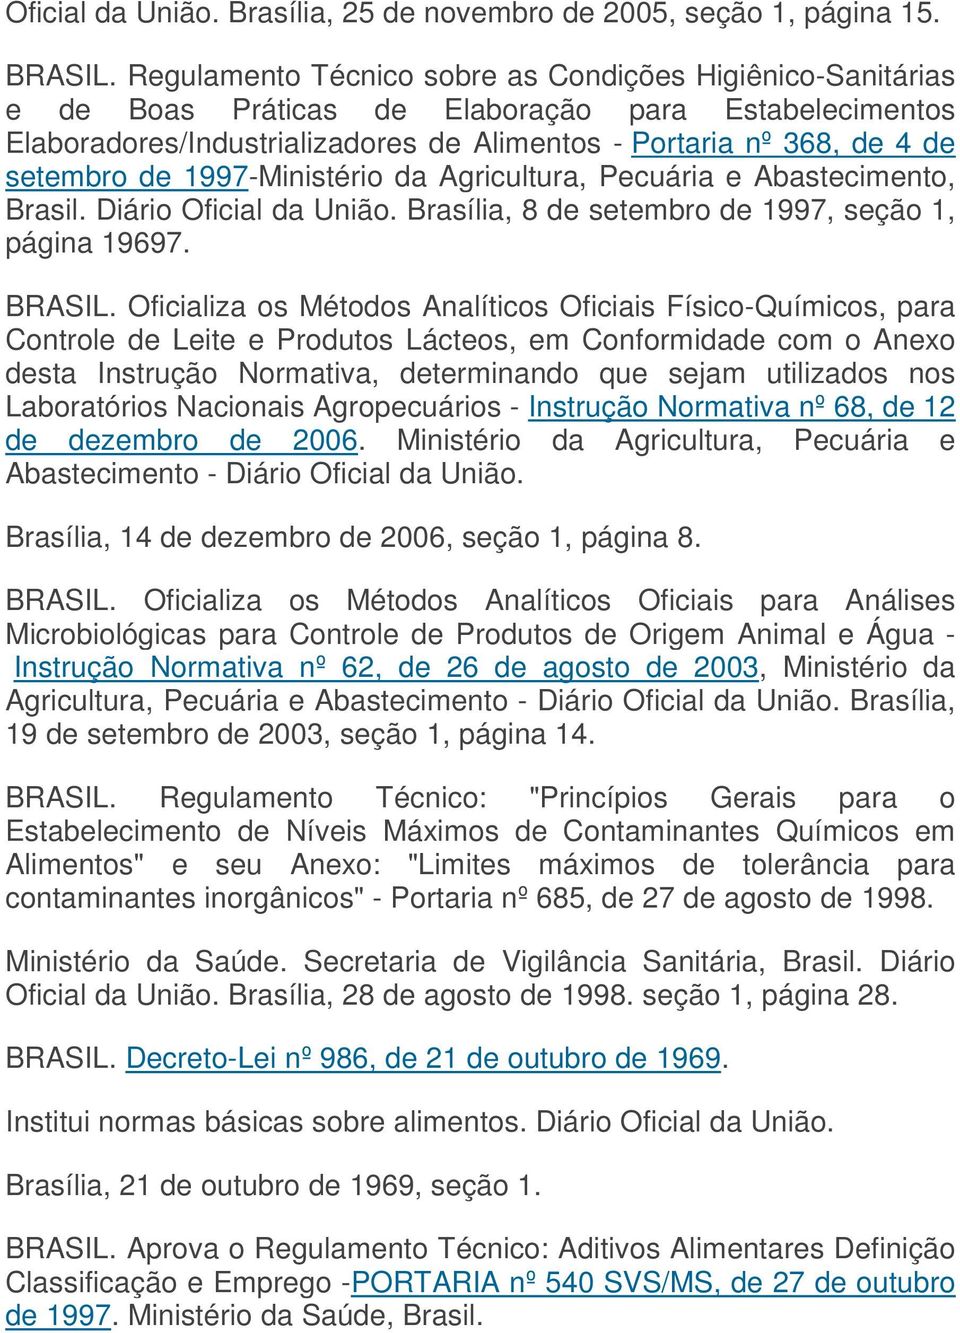 1997-Ministério da Agricultura, Pecuária e Abastecimento, Brasil. Diário Oficial da União. Brasília, 8 de setembro de 1997, seção 1, página 19697. BRASIL.